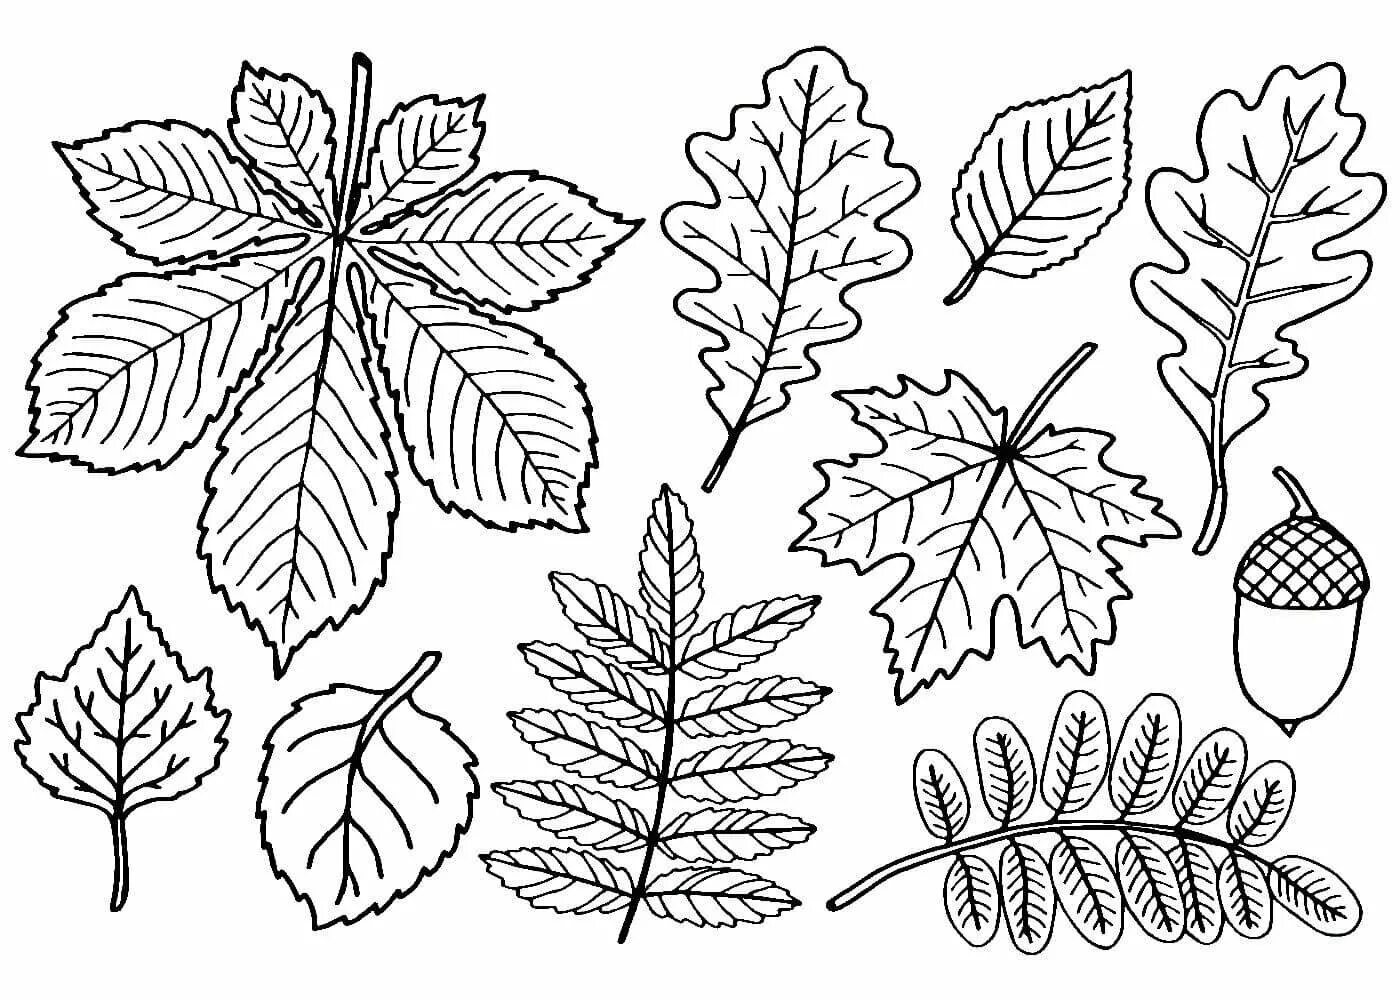 Черно белые картинки листьев. Листья деревьев раскраска. Раскраска листья деревьев для детей. Листья раскраска для детей. Лист картинка для детей раскраска.